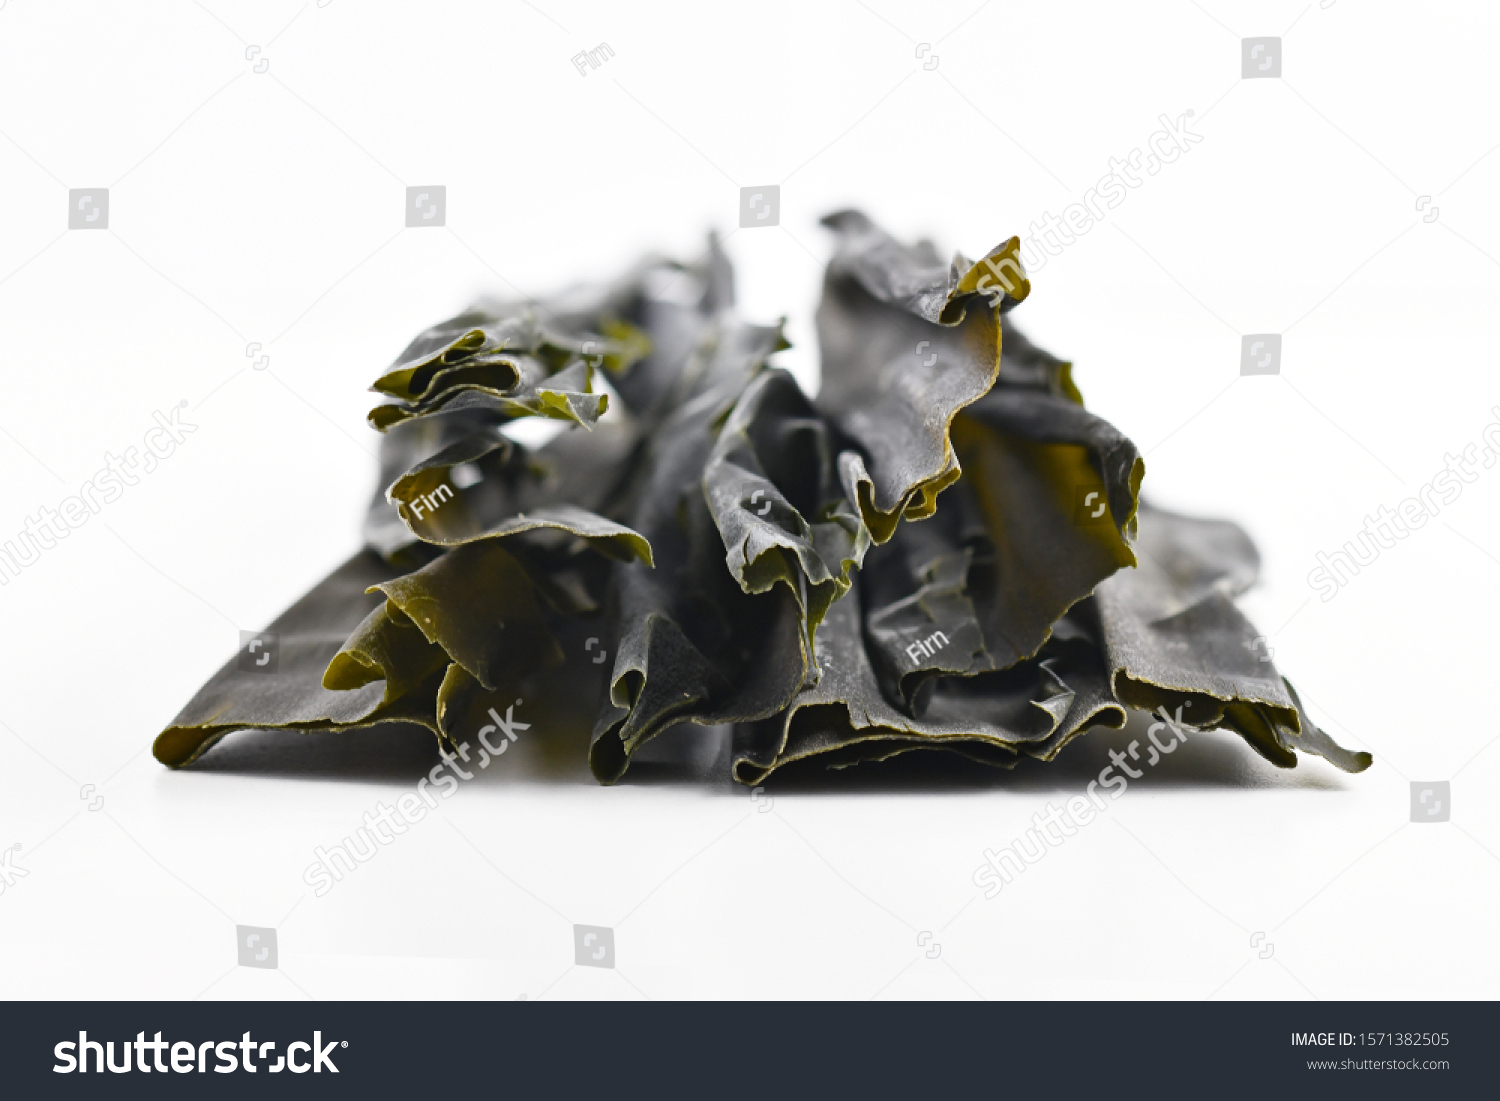 is kelp edible